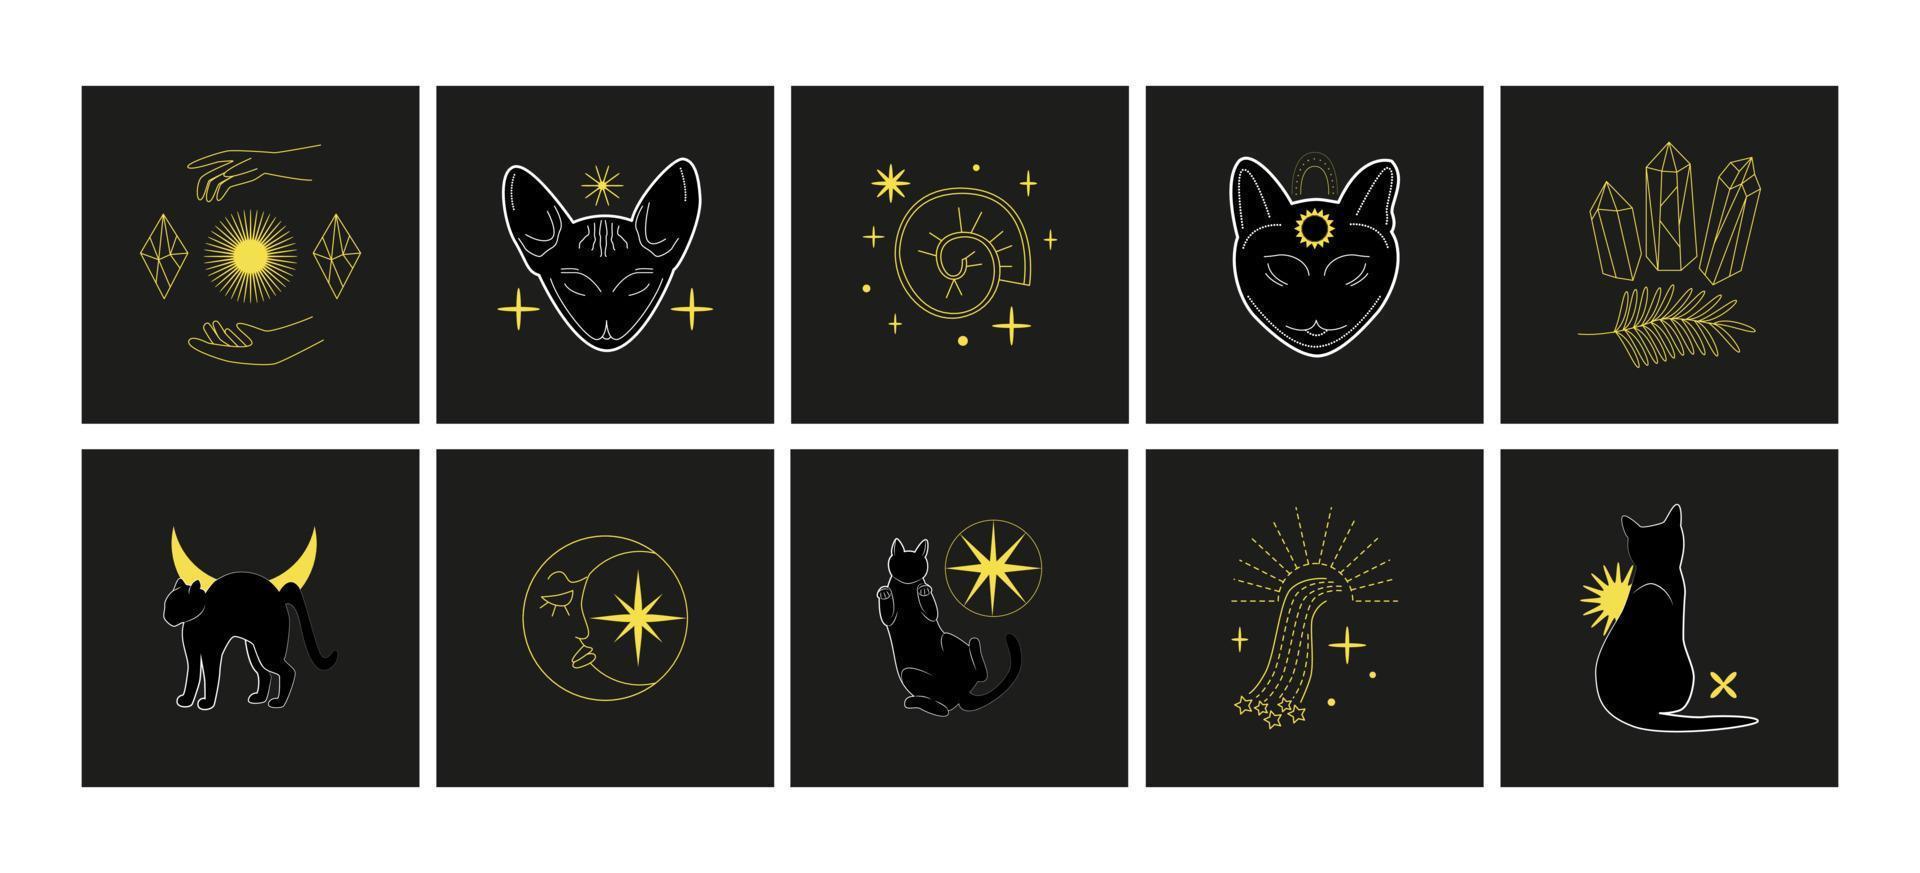 reeks van magie mysterieus kaarten, logo's, afdrukken. zwart kat, handen gebaren, Kristallen, hemel- symbolen. heks, esoterisch, tovenaar. vector